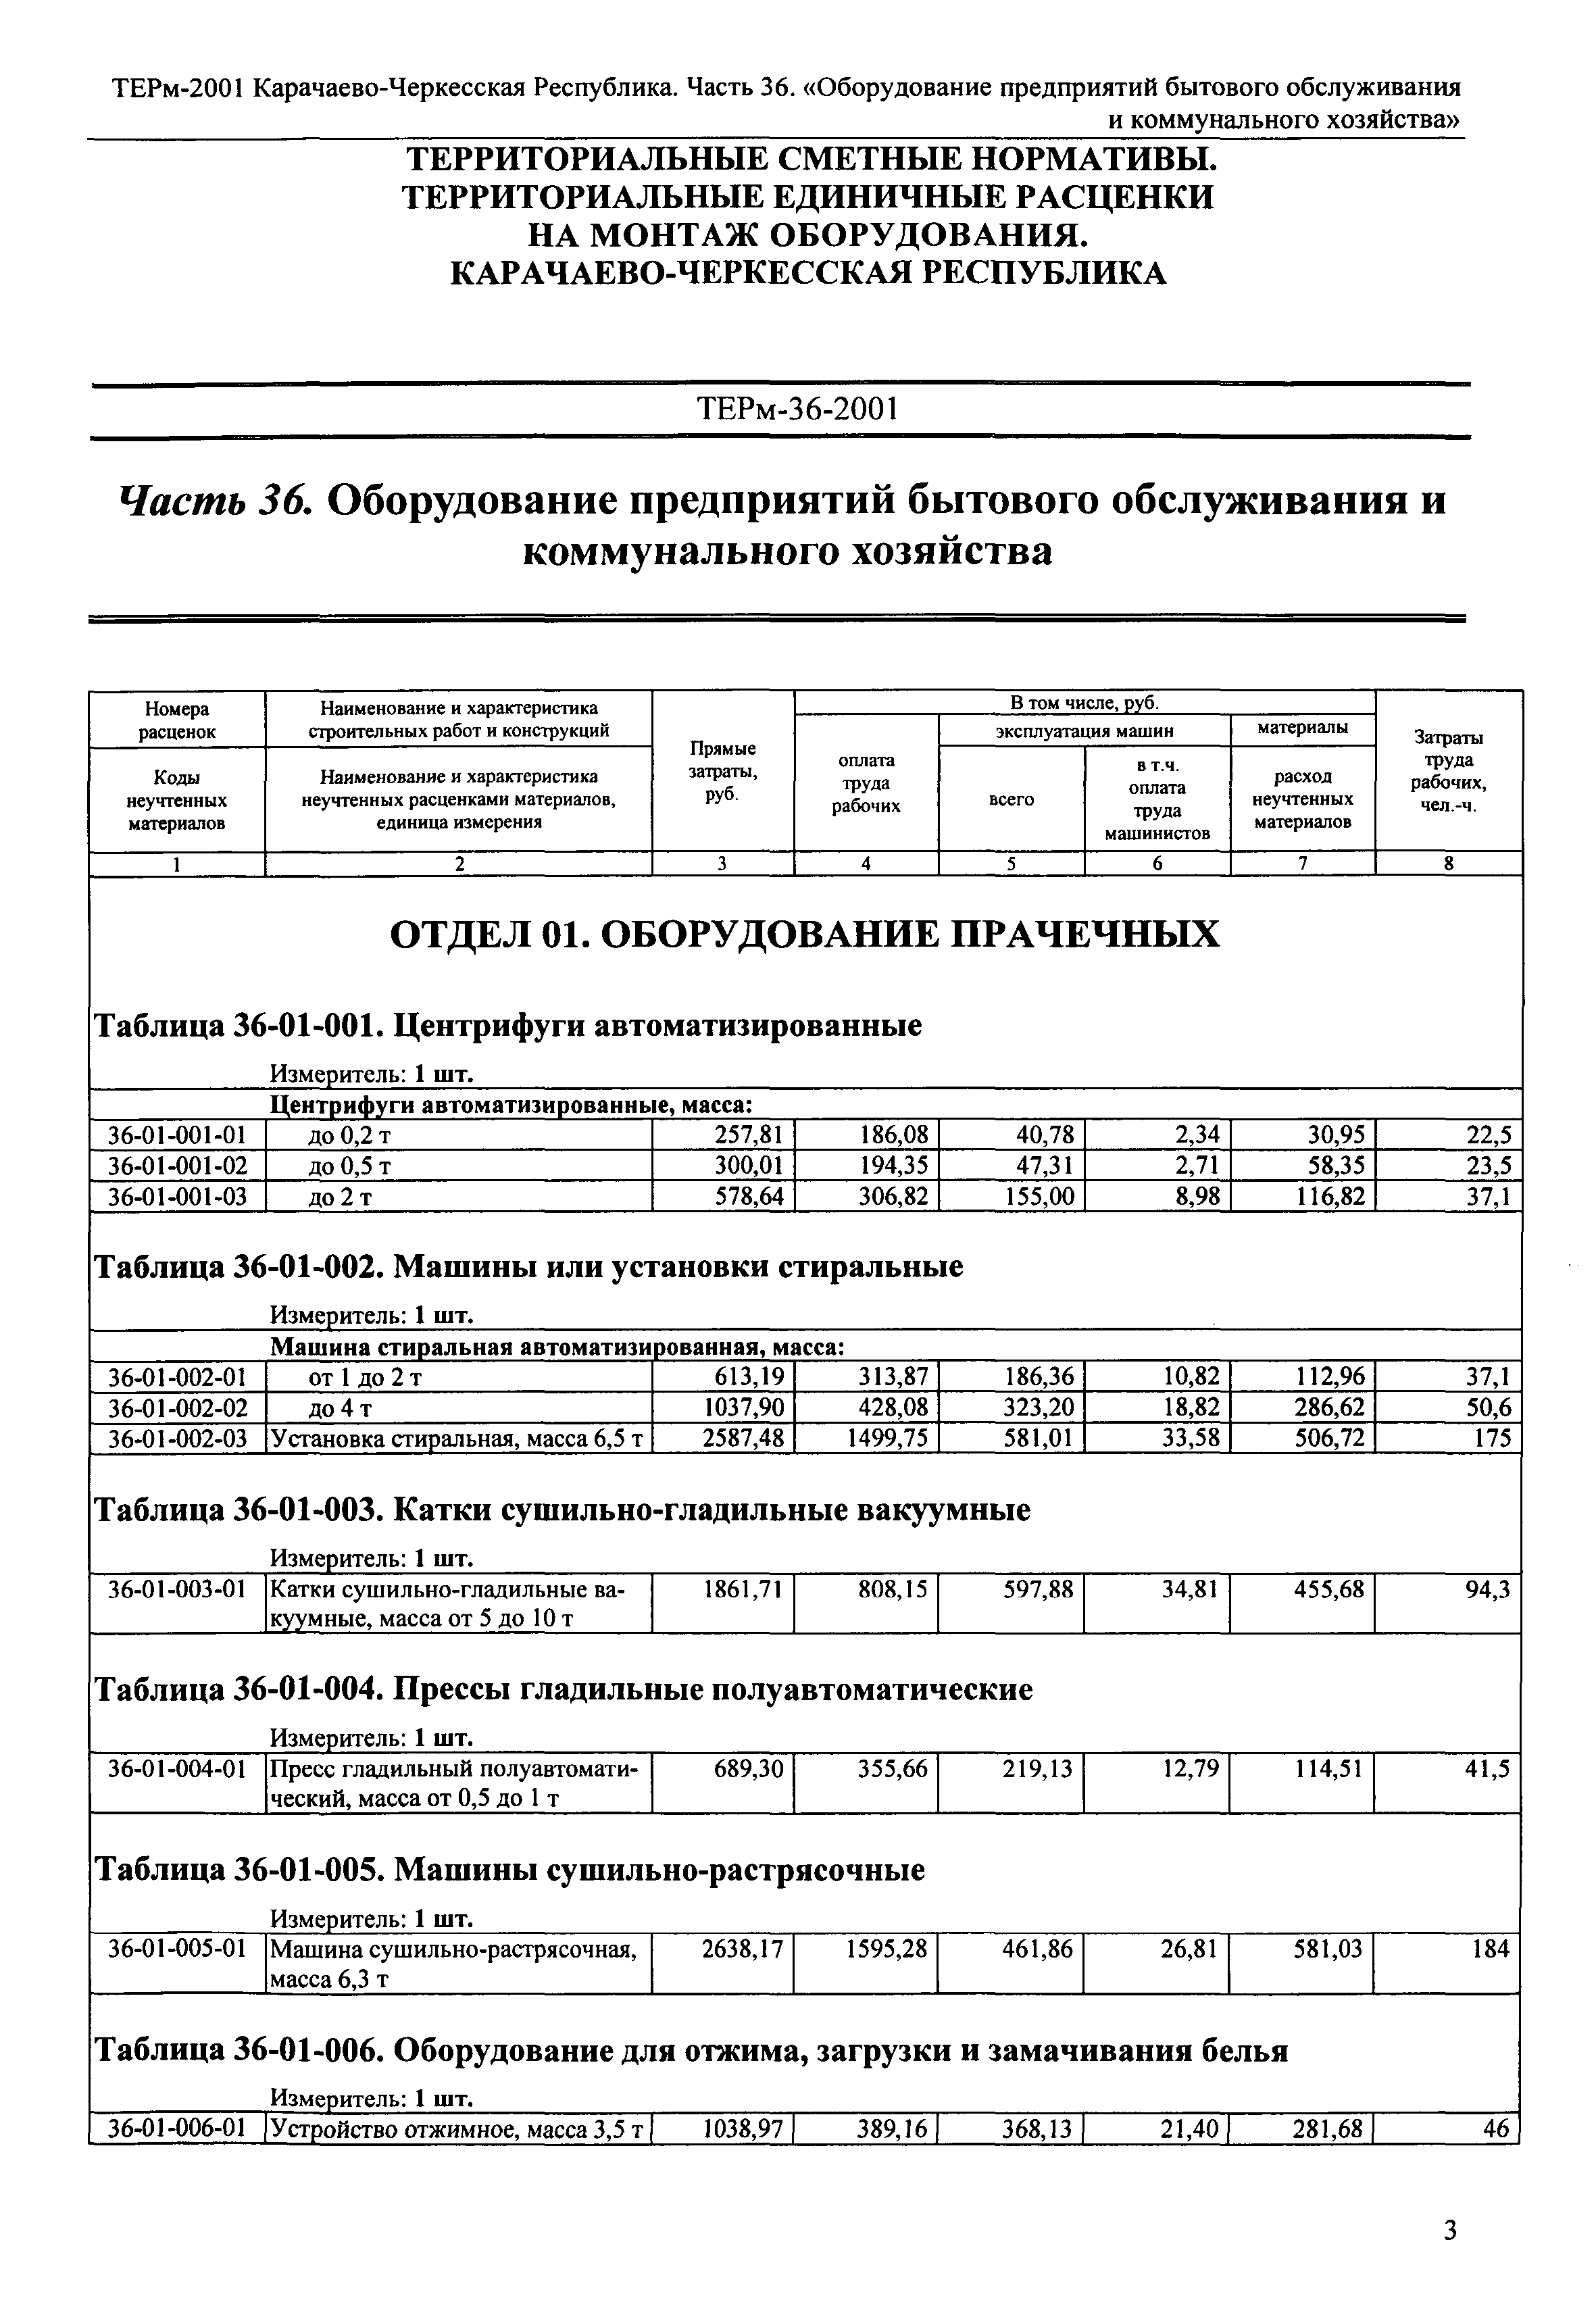 ТЕРм Карачаево-Черкесская Республика 36-2001